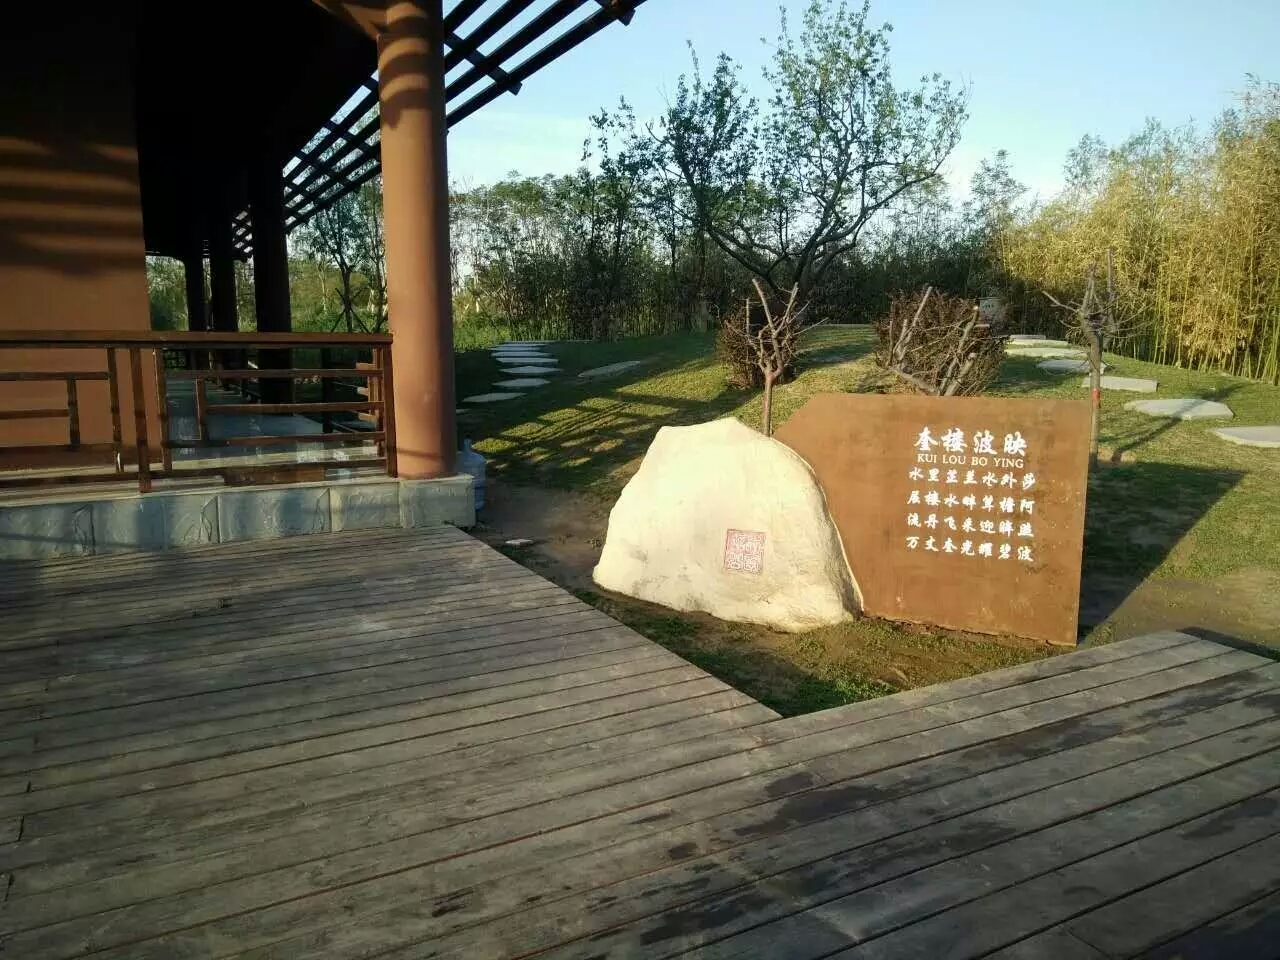 衡水阜城有河北第一个八景公园!